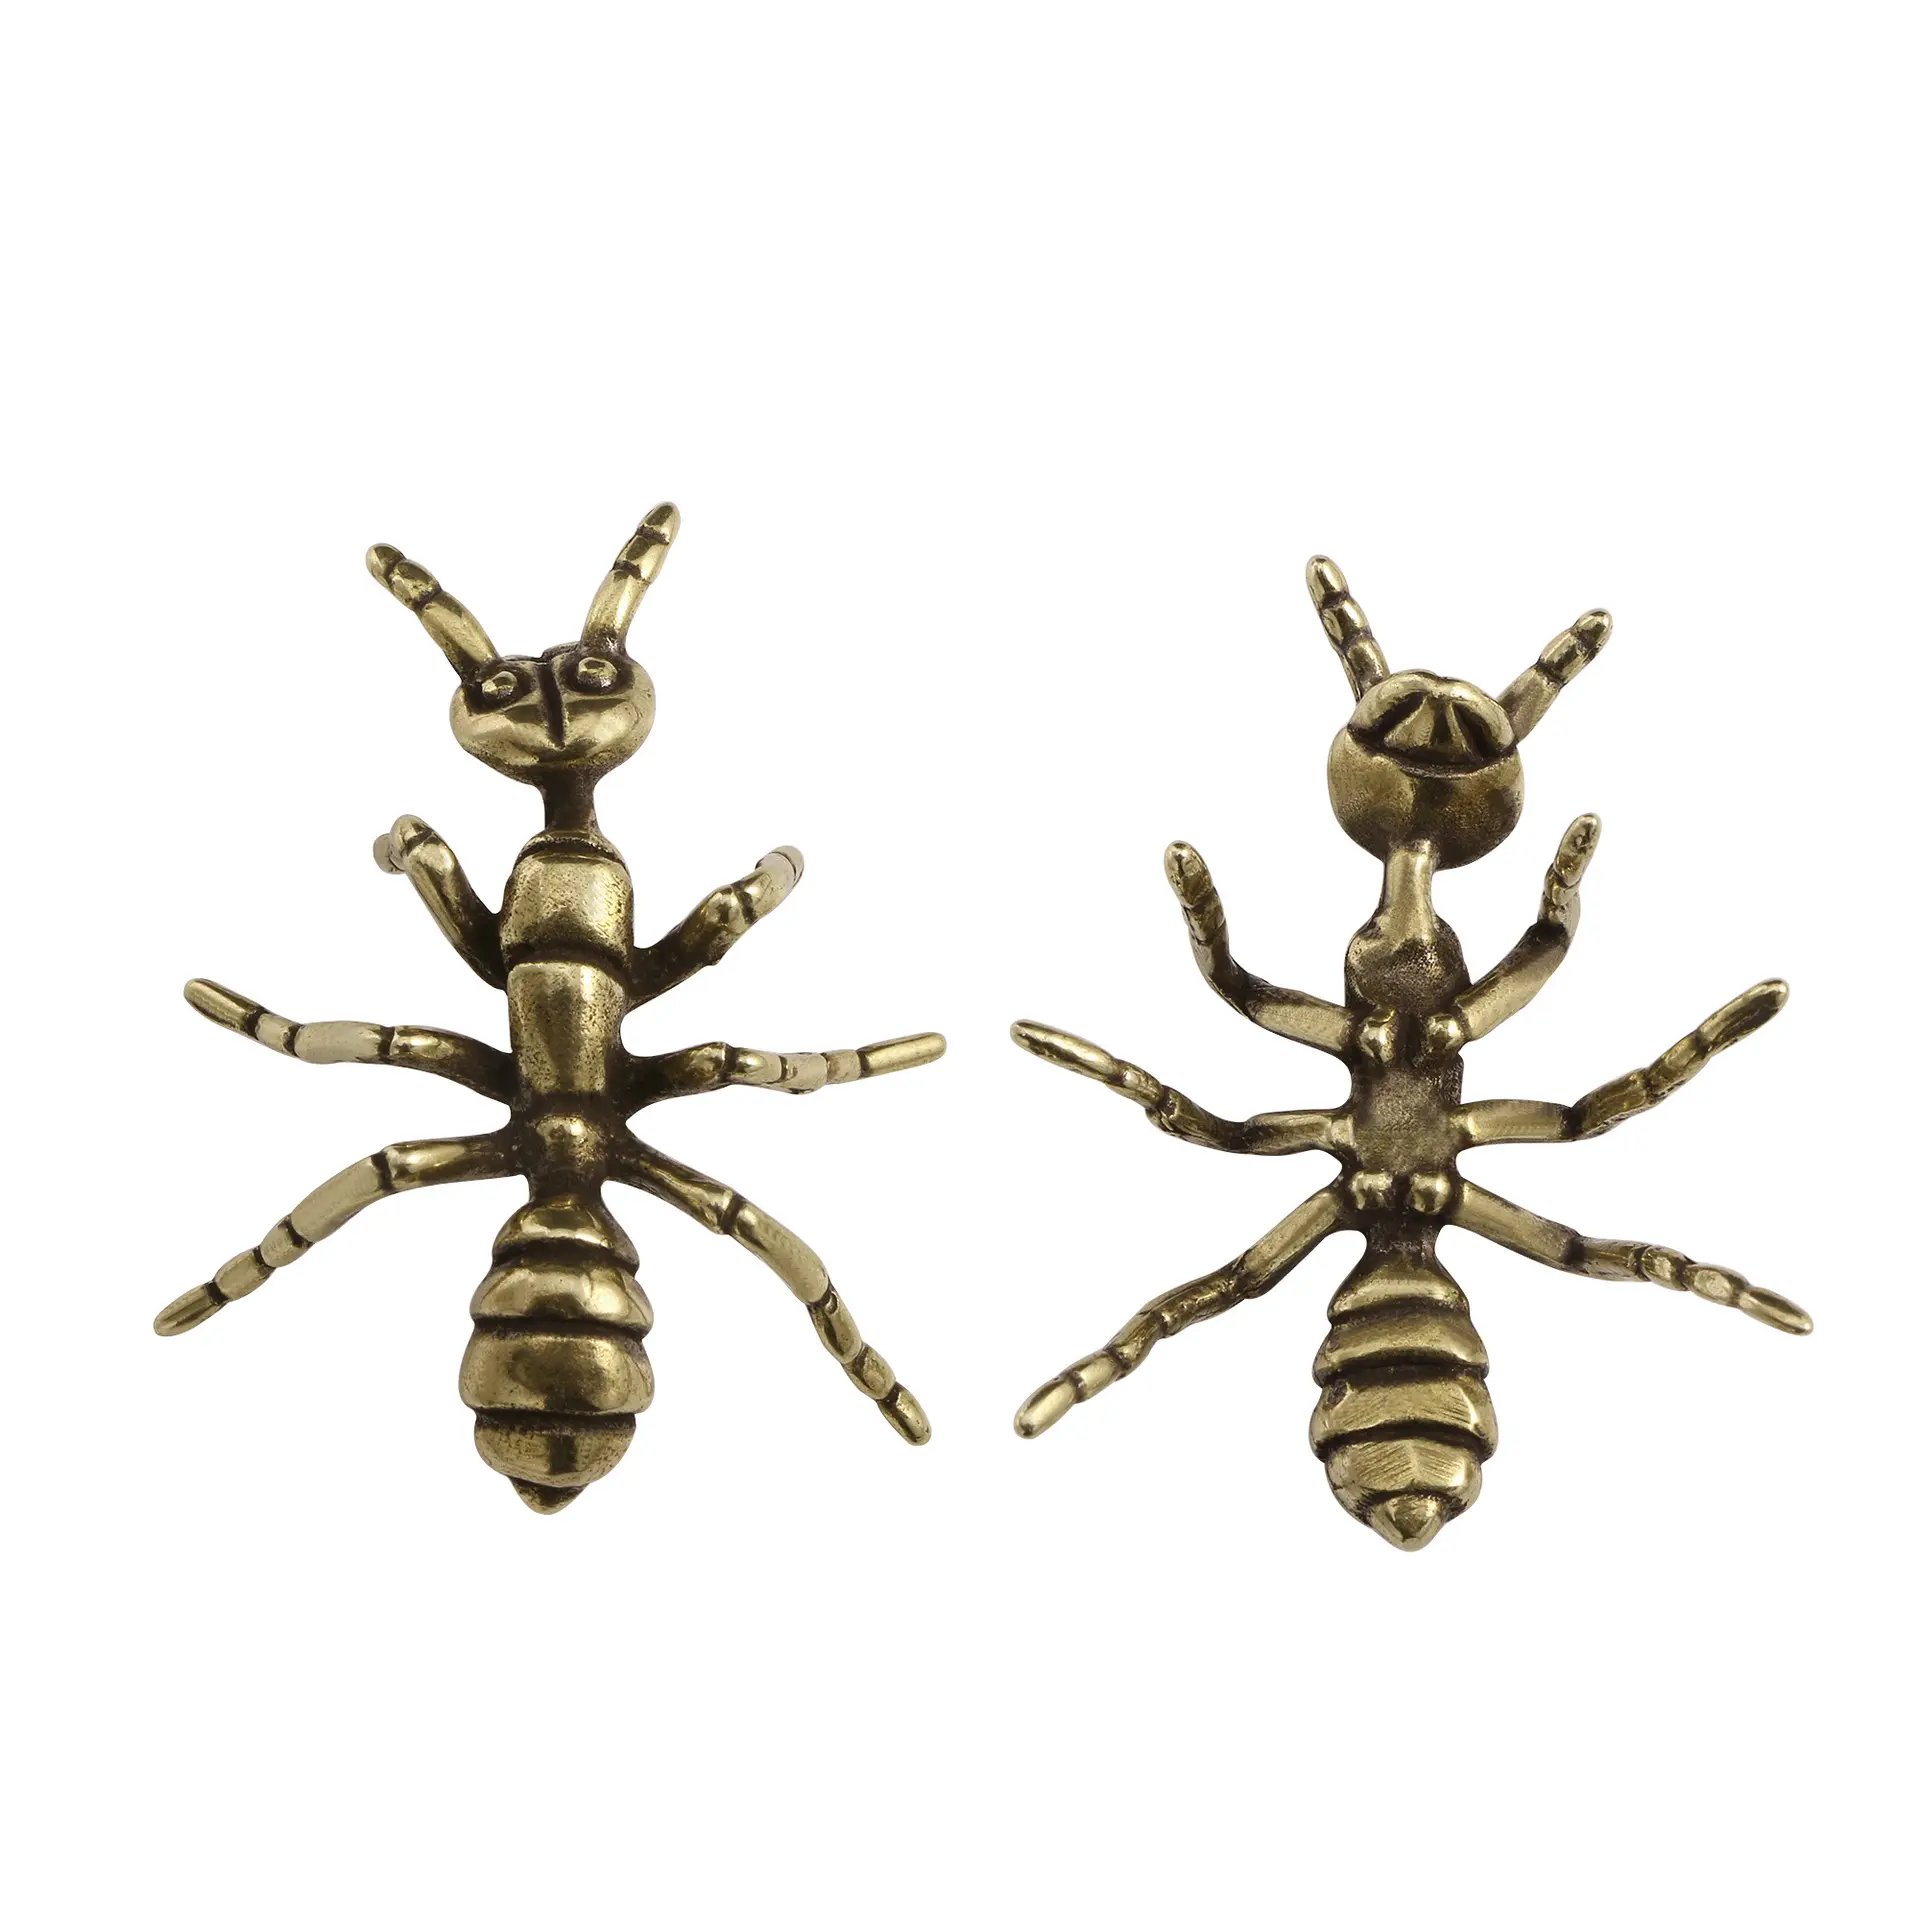 Adornos creativos de hormigas antiguas, decoración de escritorio de insectos tallados en cobre antiguo chino, venta al por mayor